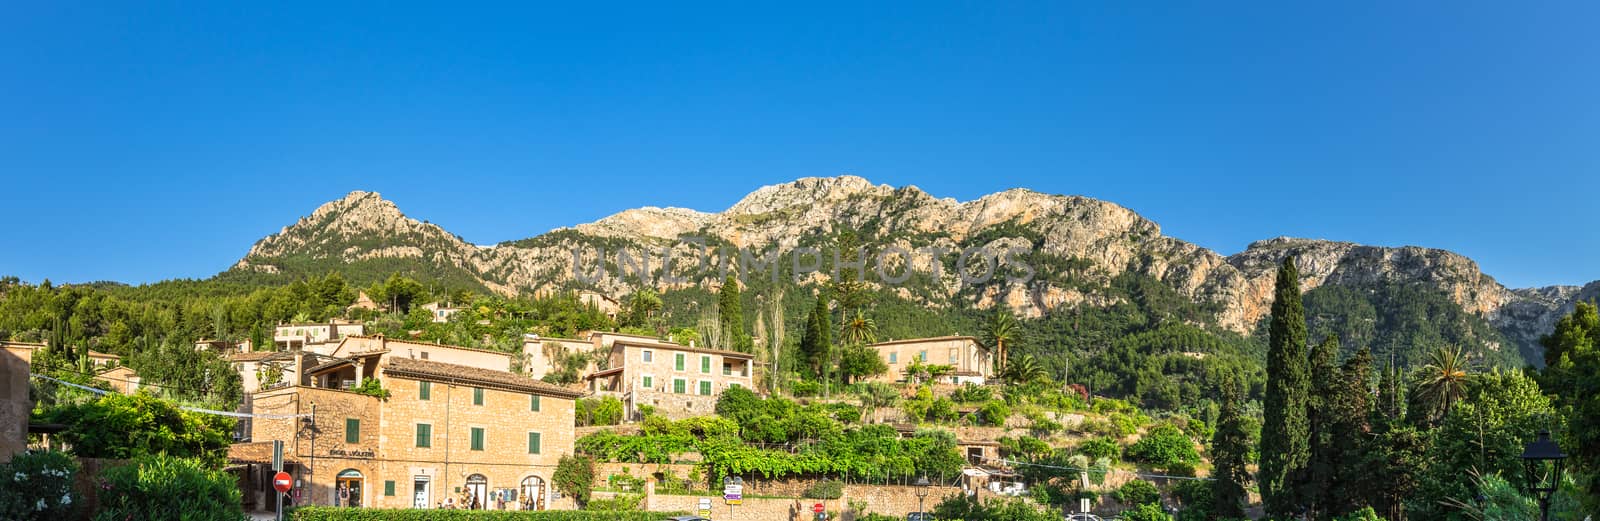 Idyllic mountain panorama landscape of Deia village on Mallorca island, Spain